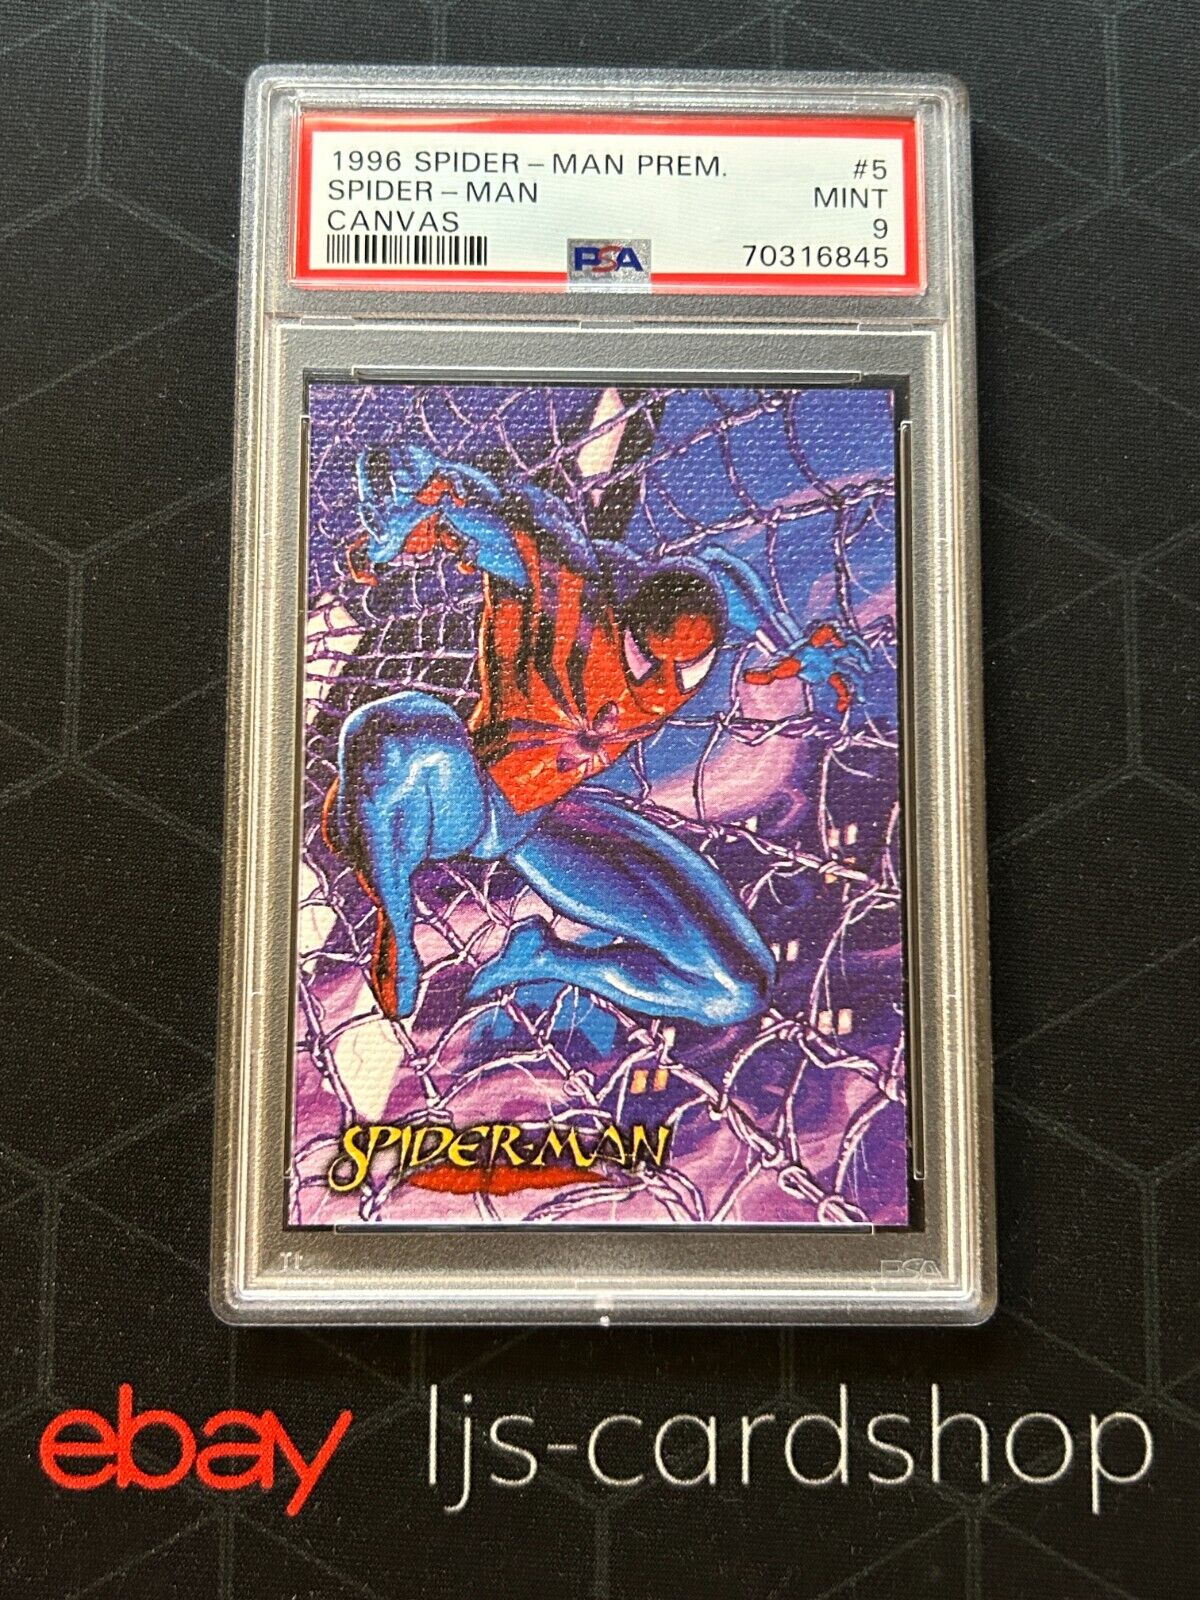 1996 Spider-Man Premium Spider-Man #5 of 6 Canvas Insert PSA 9 SPM